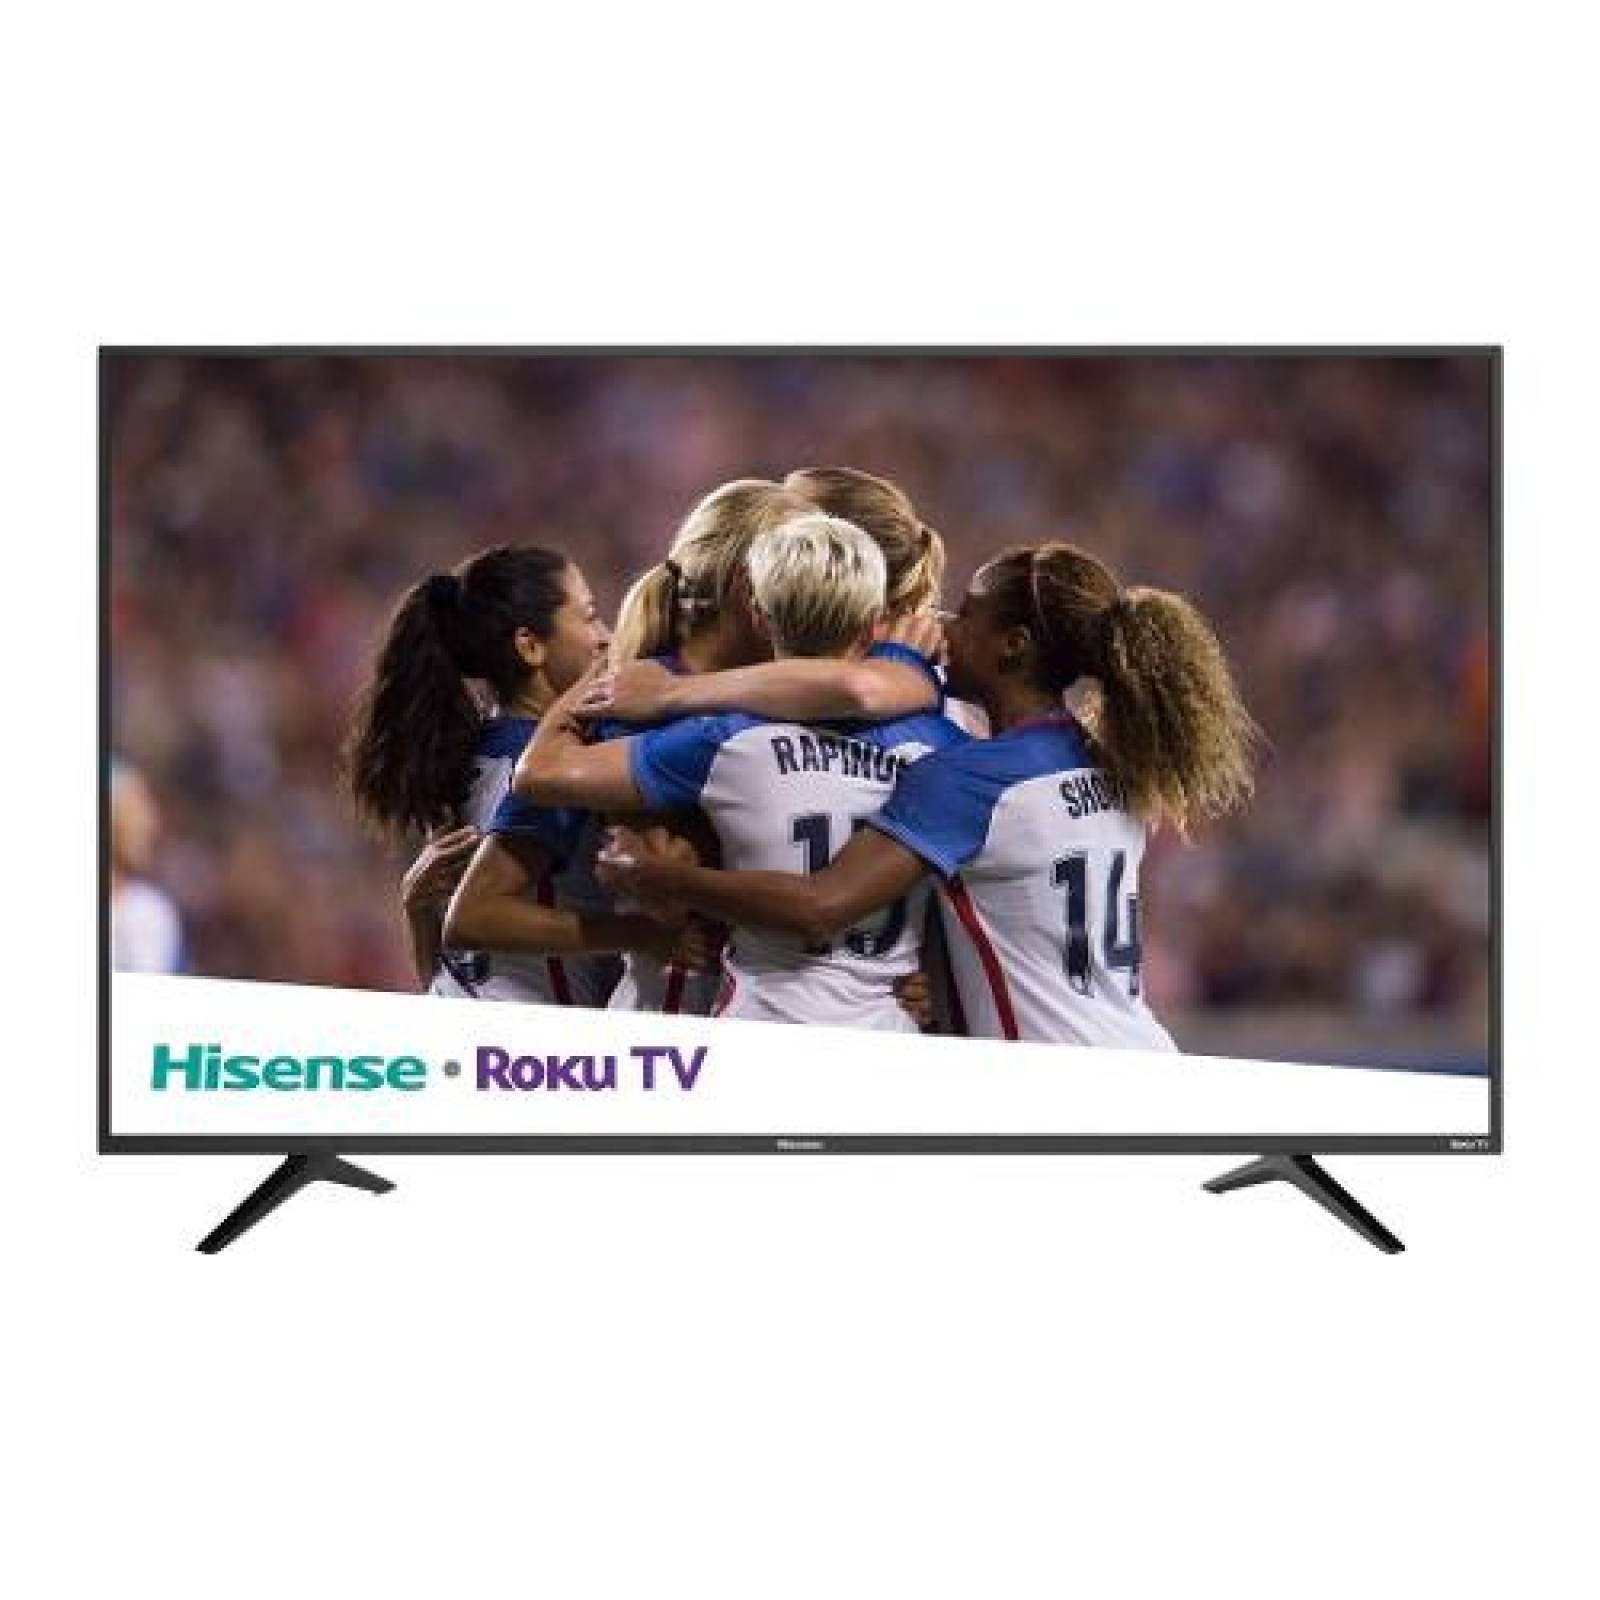 TV HISENSE 55 LED 4K 3840X2160P SMART TV